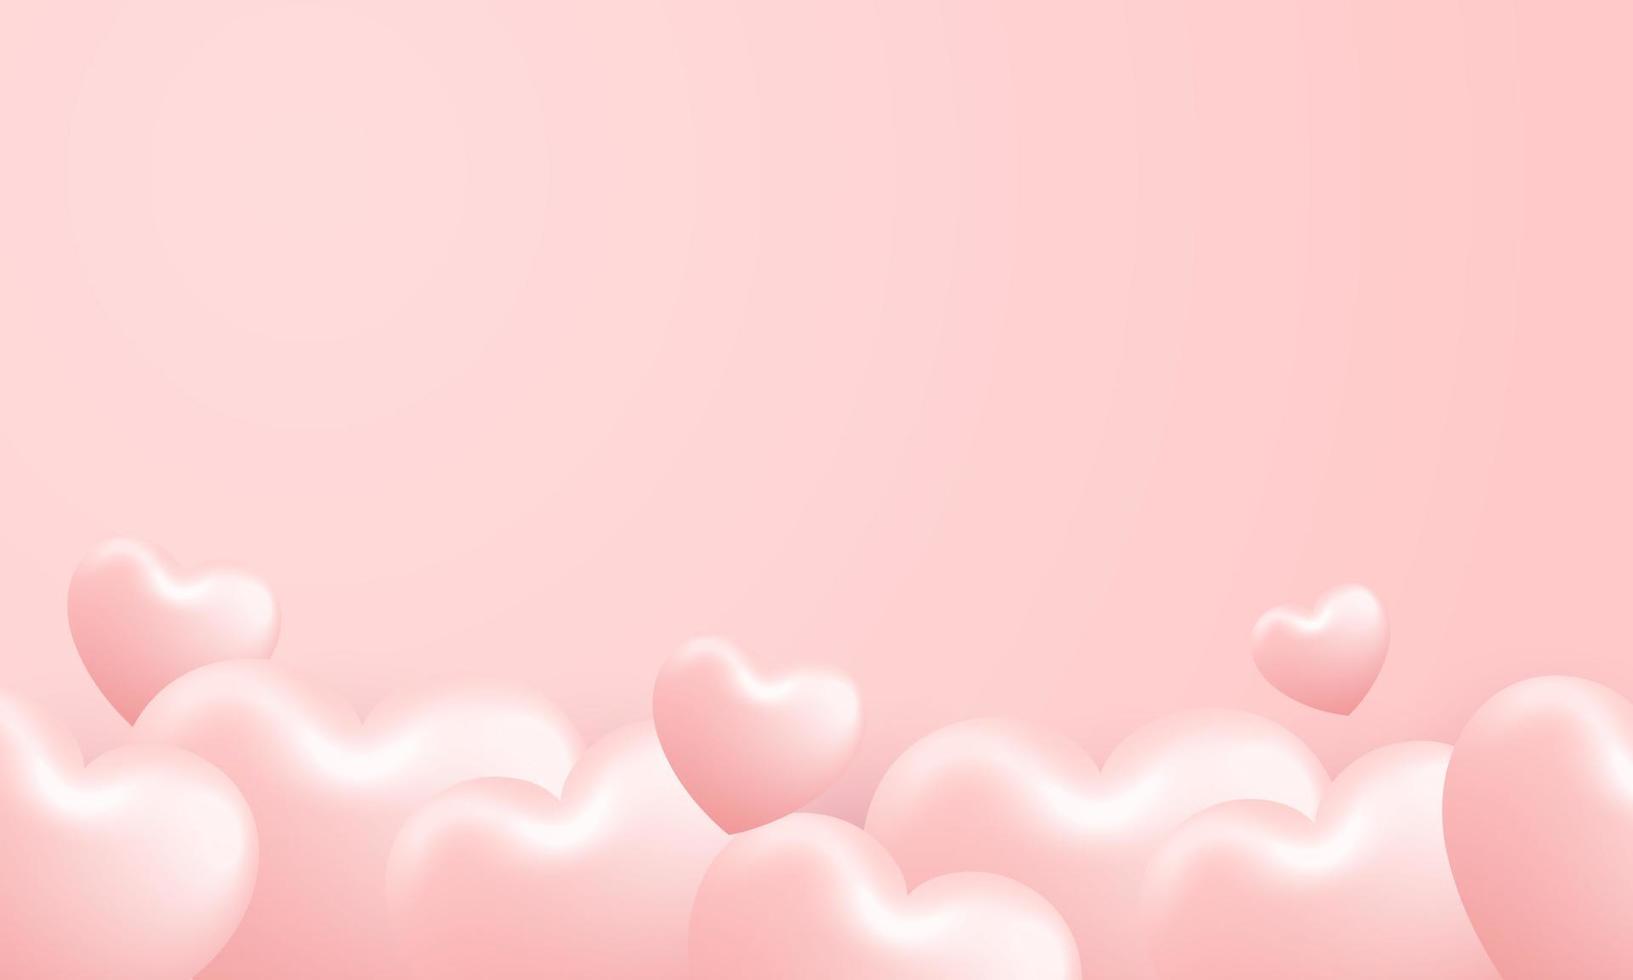 amo ilustração de fundo feliz dia dos namorados. lindo fundo rosa com coração de empilhamento realista vetor